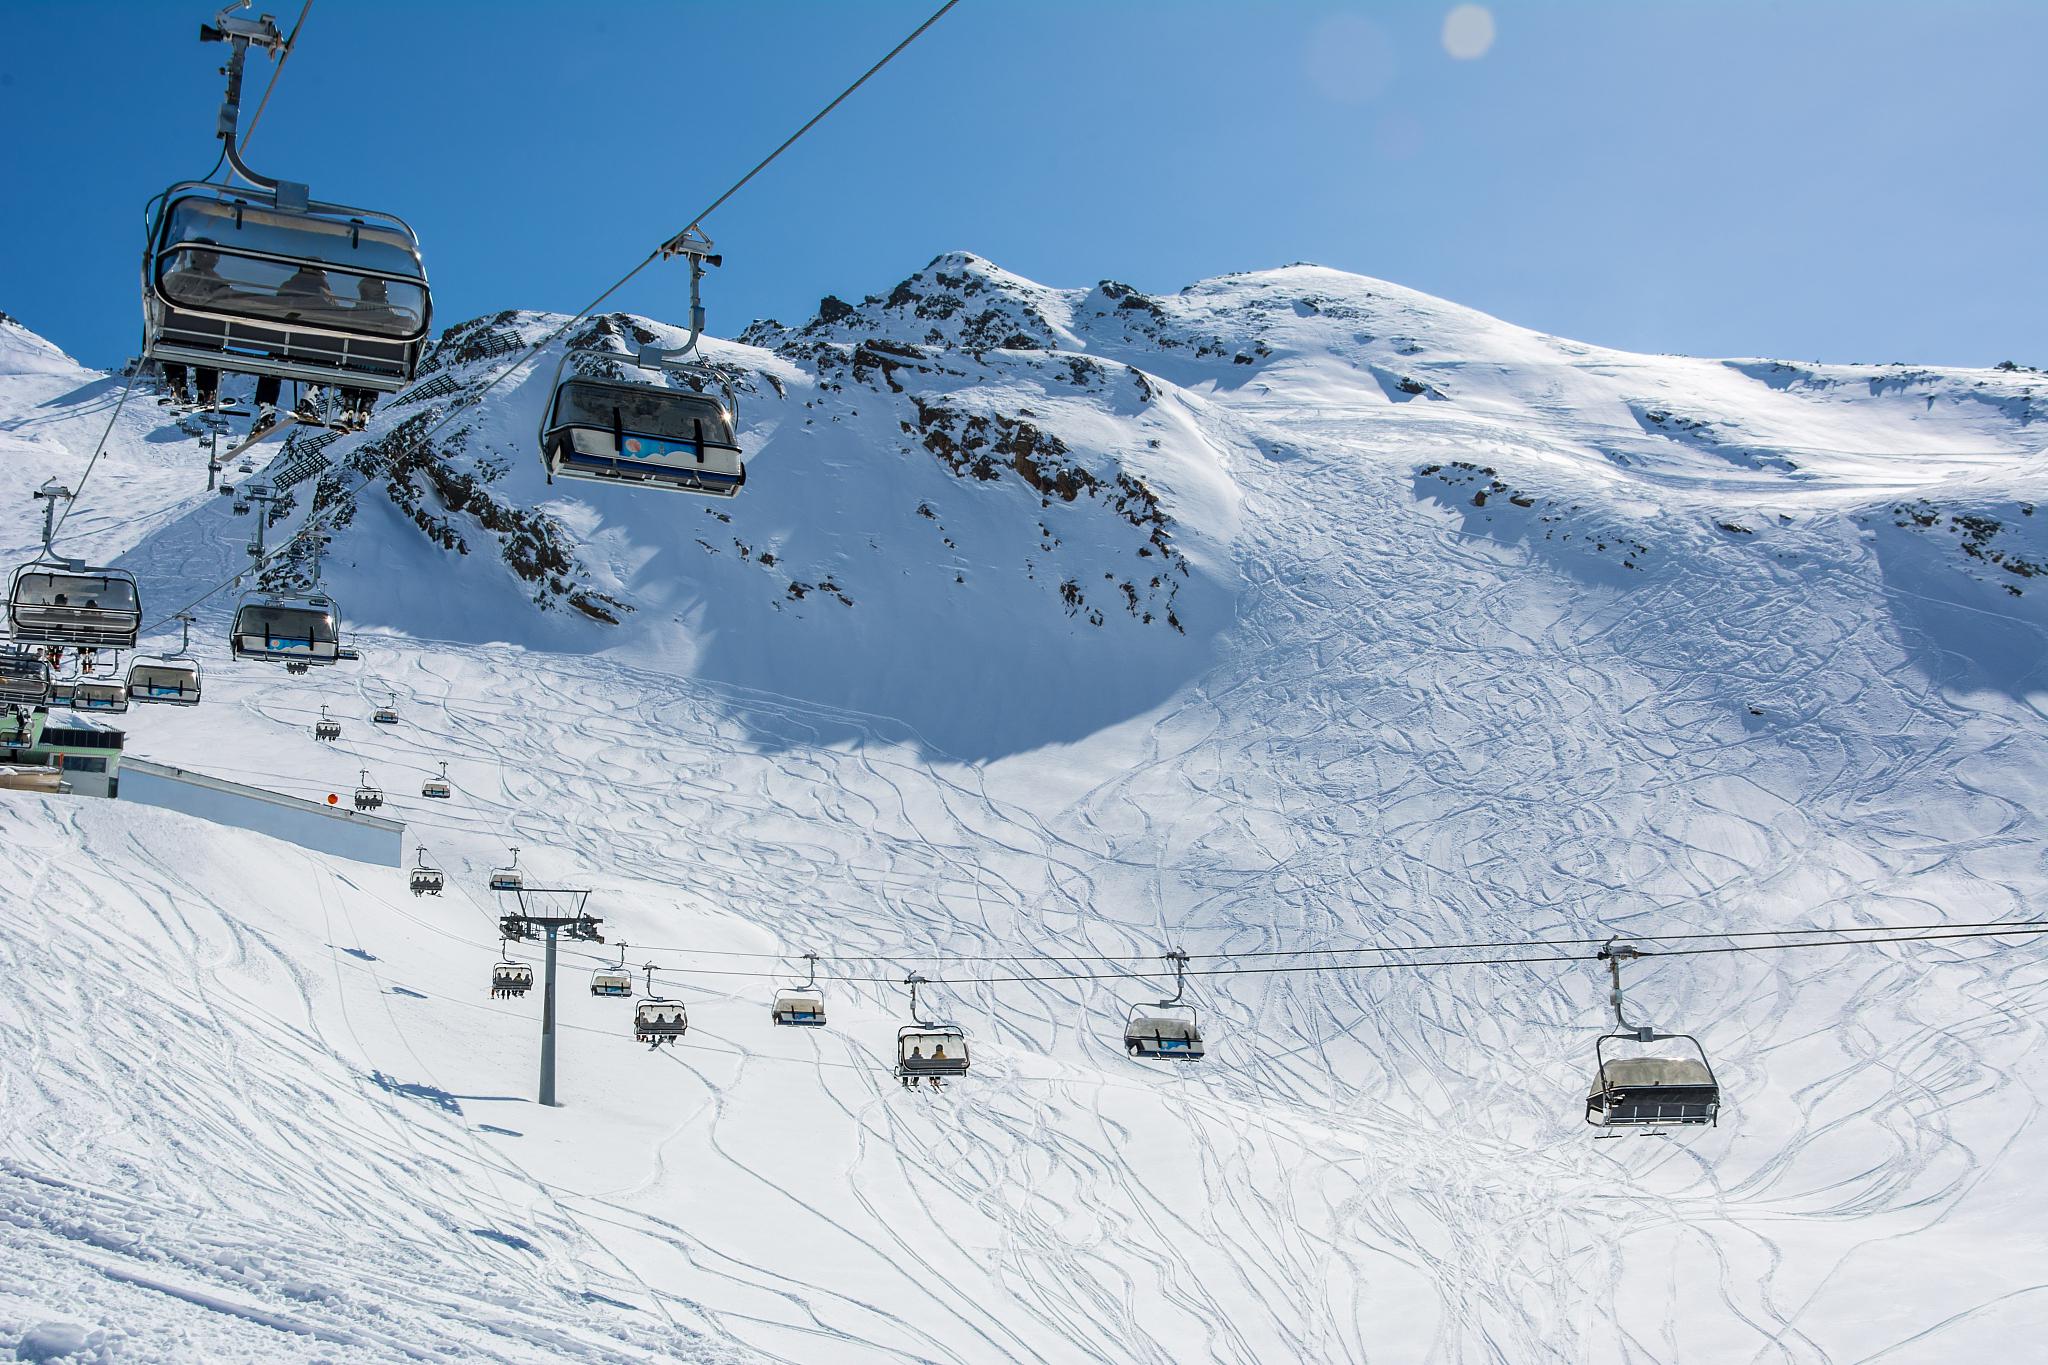 阿尔卑斯山冬季旅游攻略 阿尔卑斯山,这个欧洲的壮丽山脉,以其雄伟